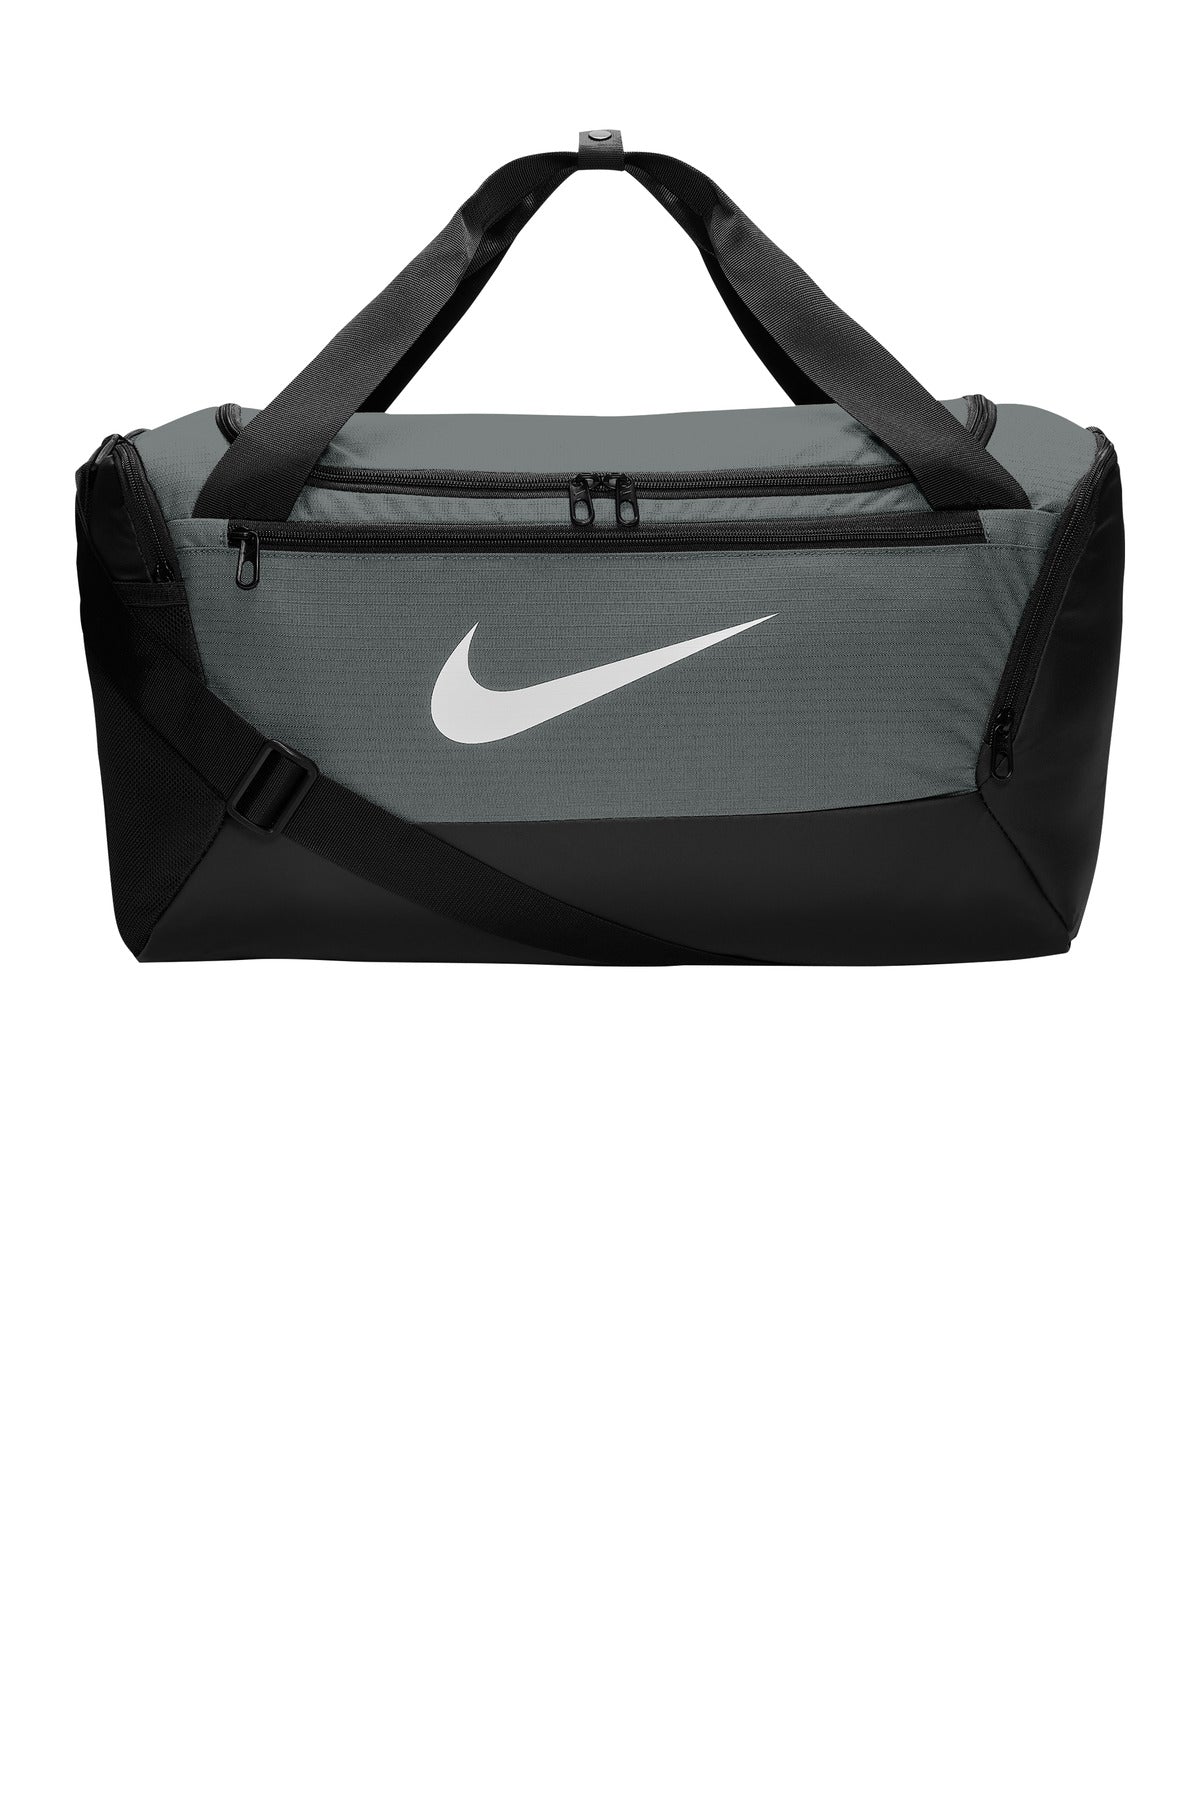 Bags Flint Grey OSFA Nike